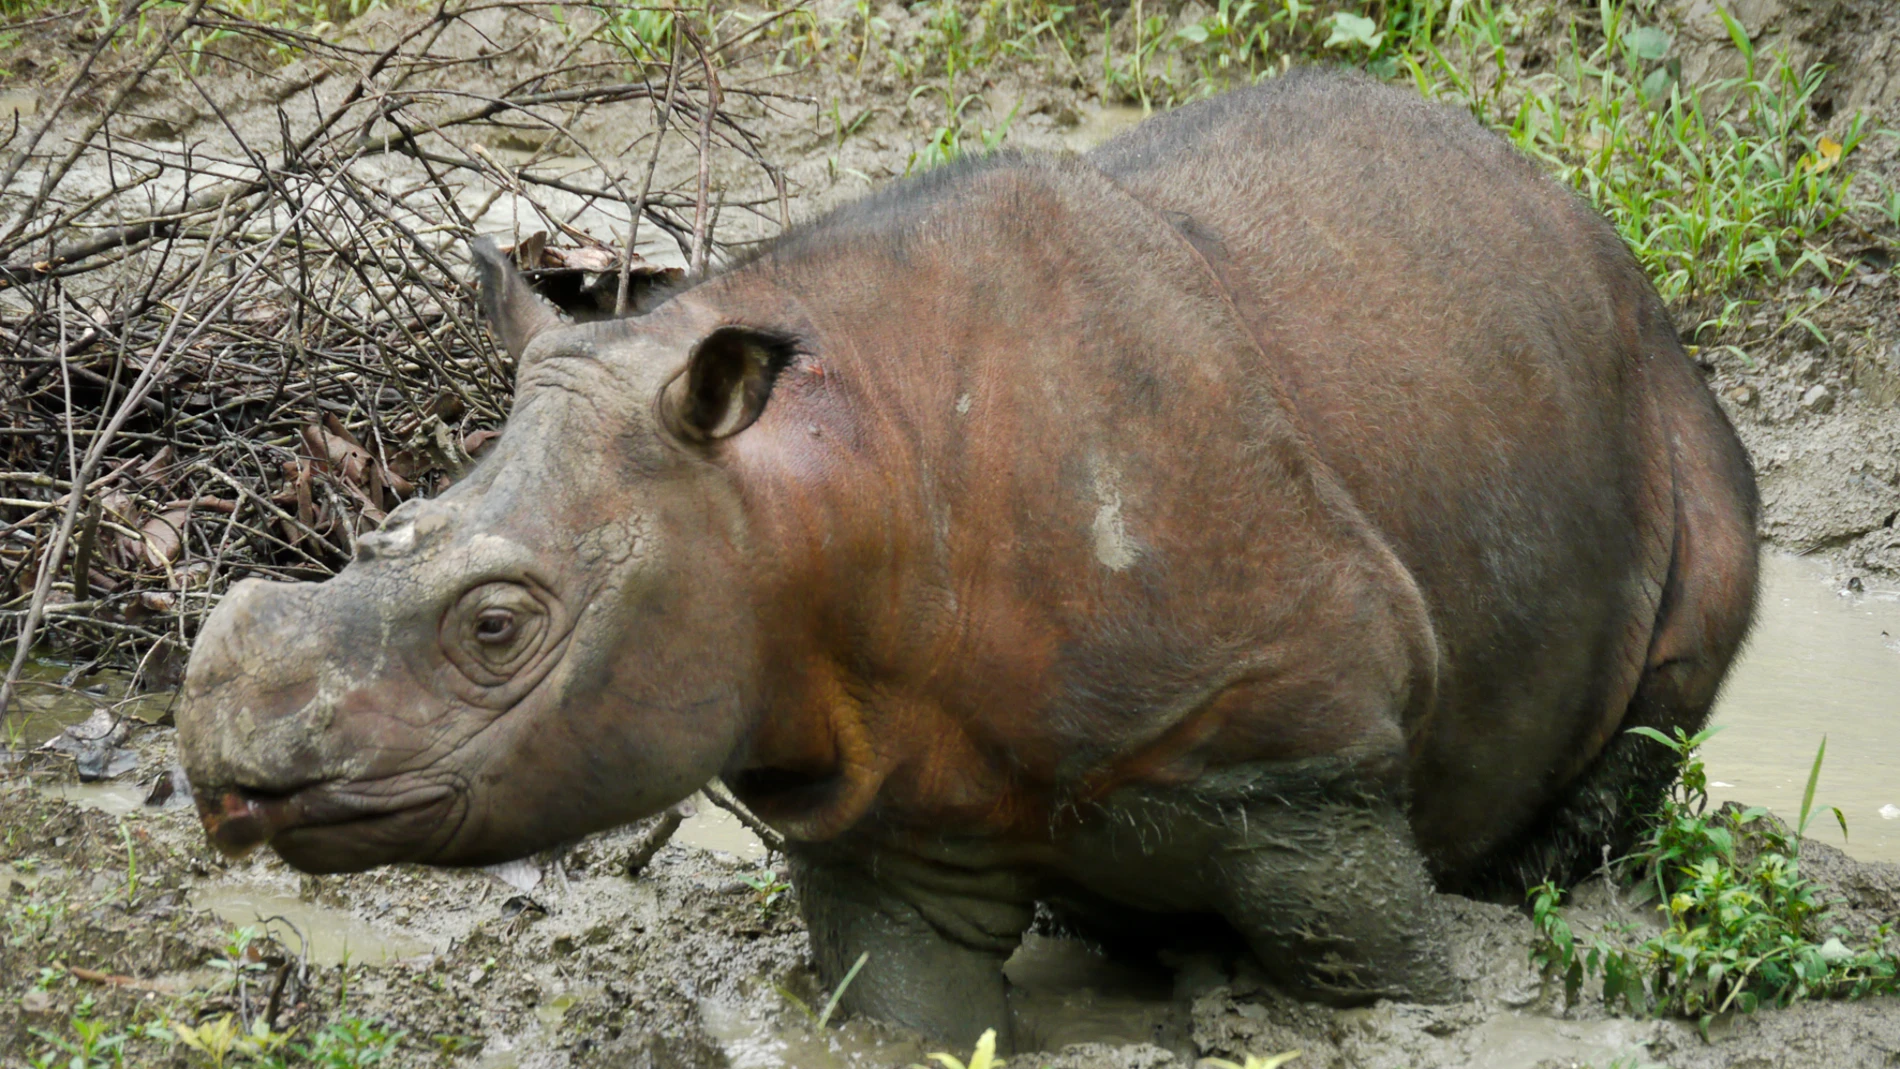 Un macho joven de rinoceronte de Sumatra analizado para el estudio genético (Borneo)